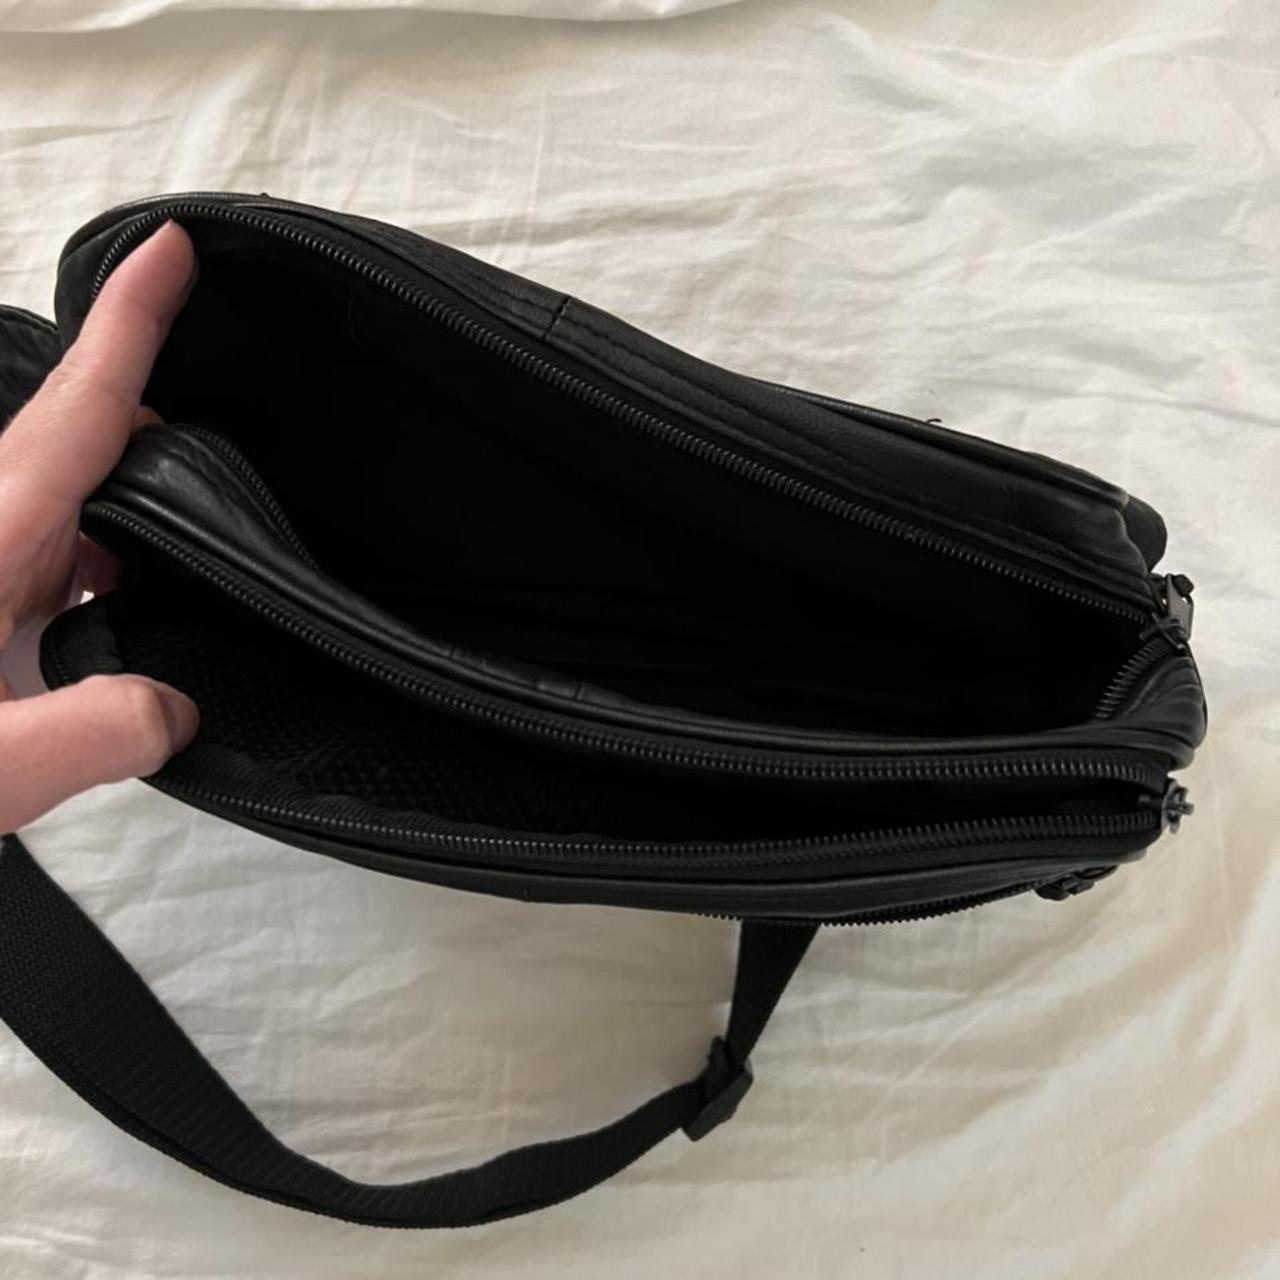 Leather sling bag - Depop